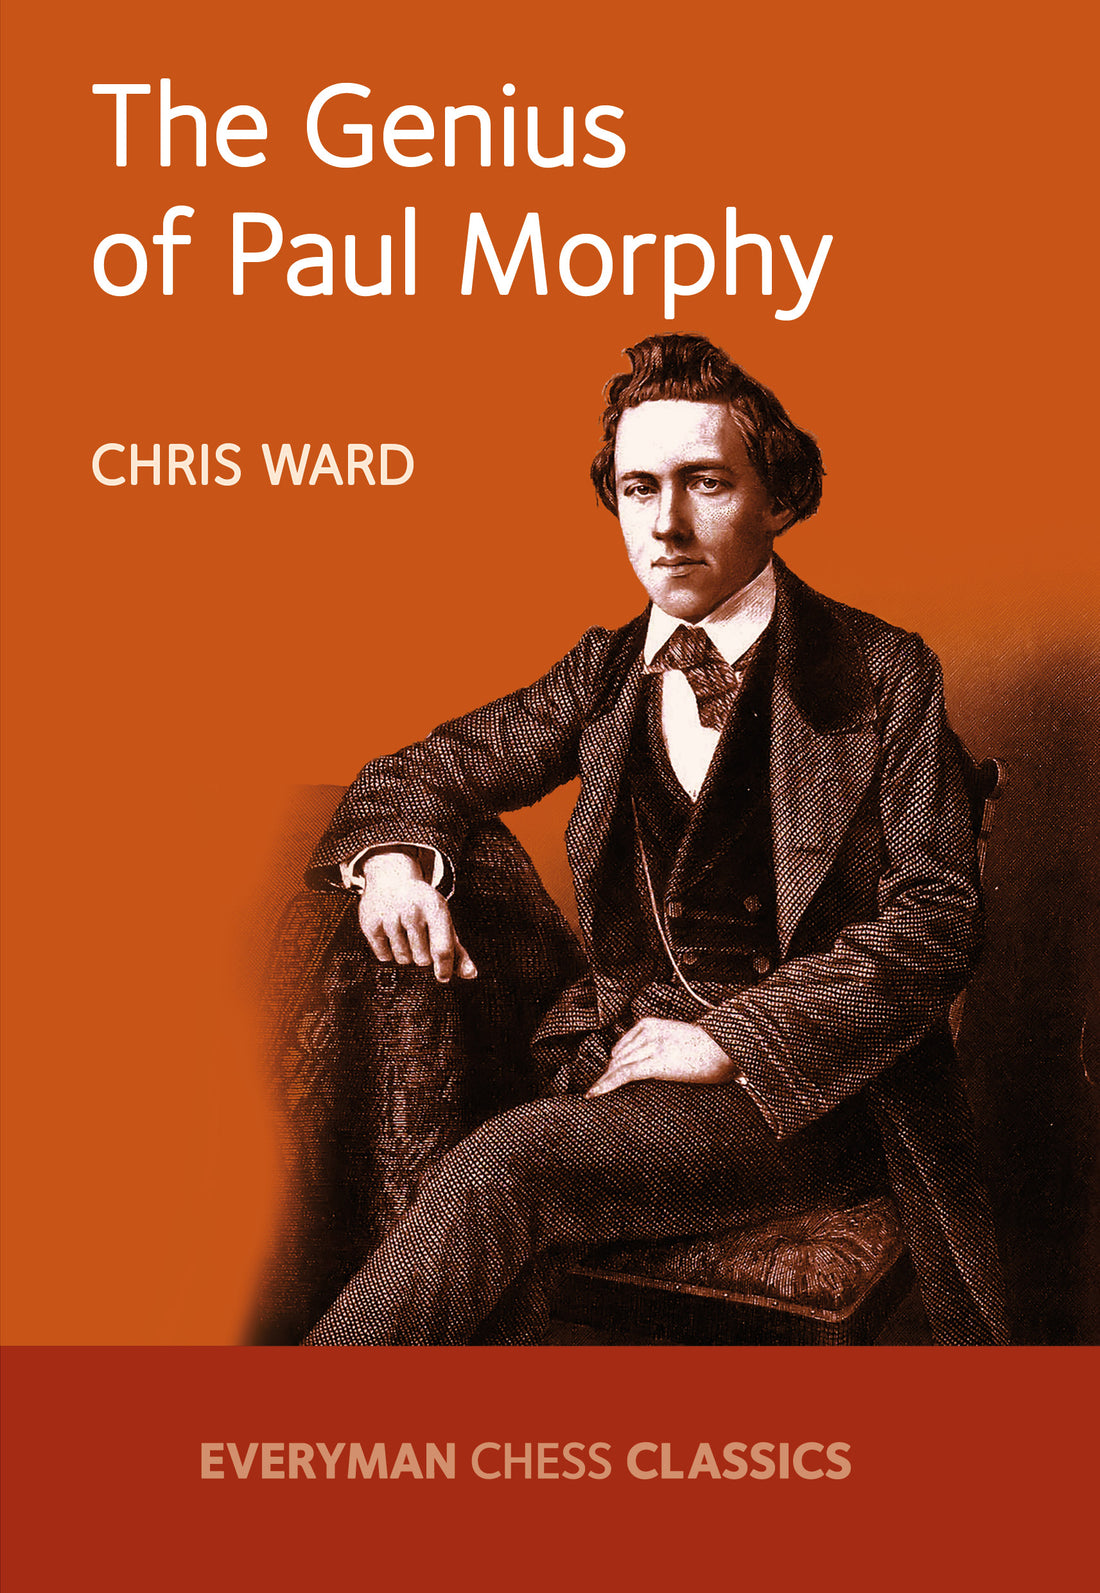 Paul Morphy: denouement - the Endgame